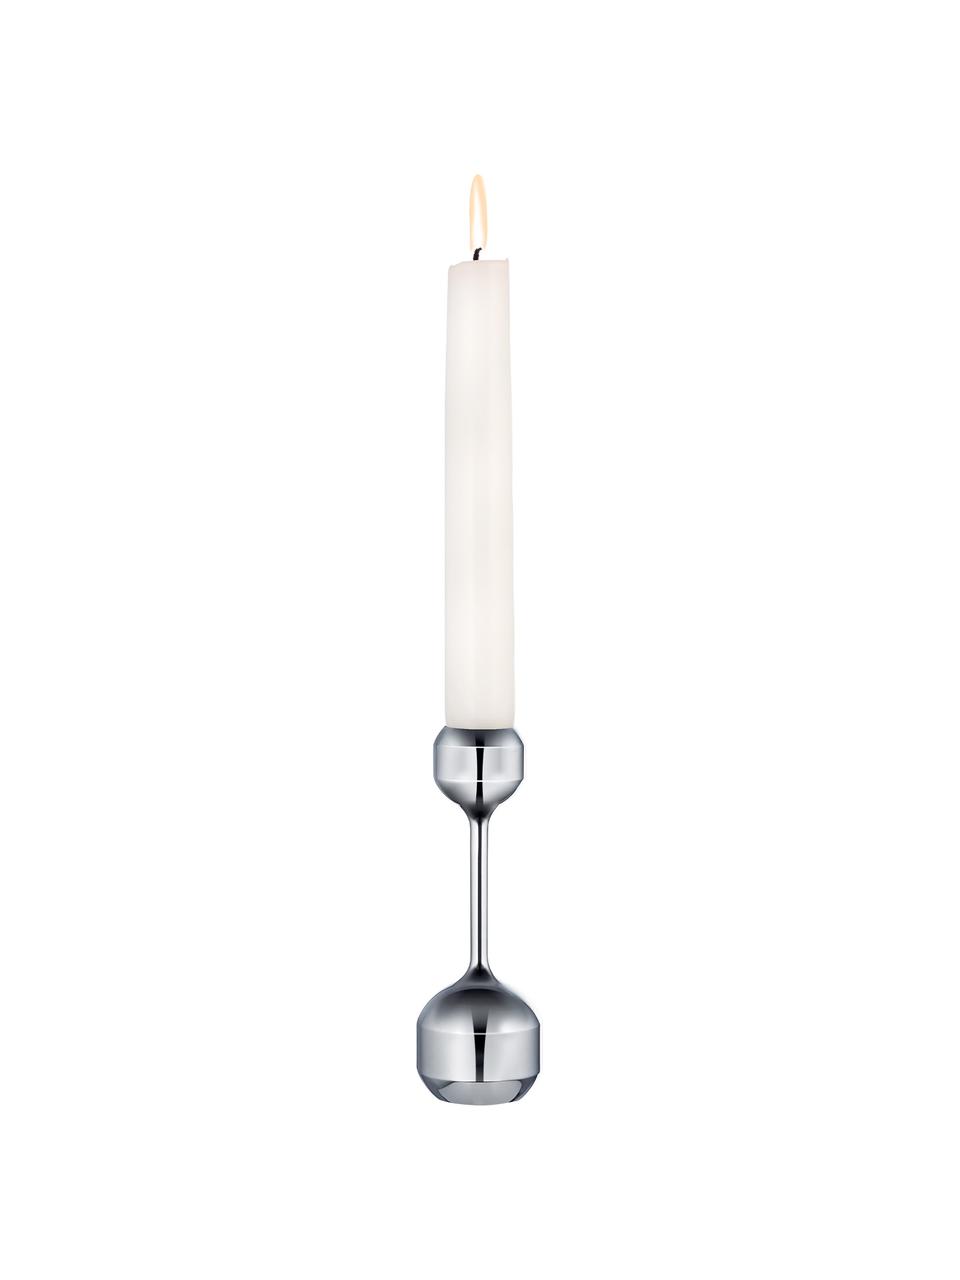 Kerzenhalter Silhouette, Metall, beschichtet, Silberfarben, Ø 4 x H 12 cm